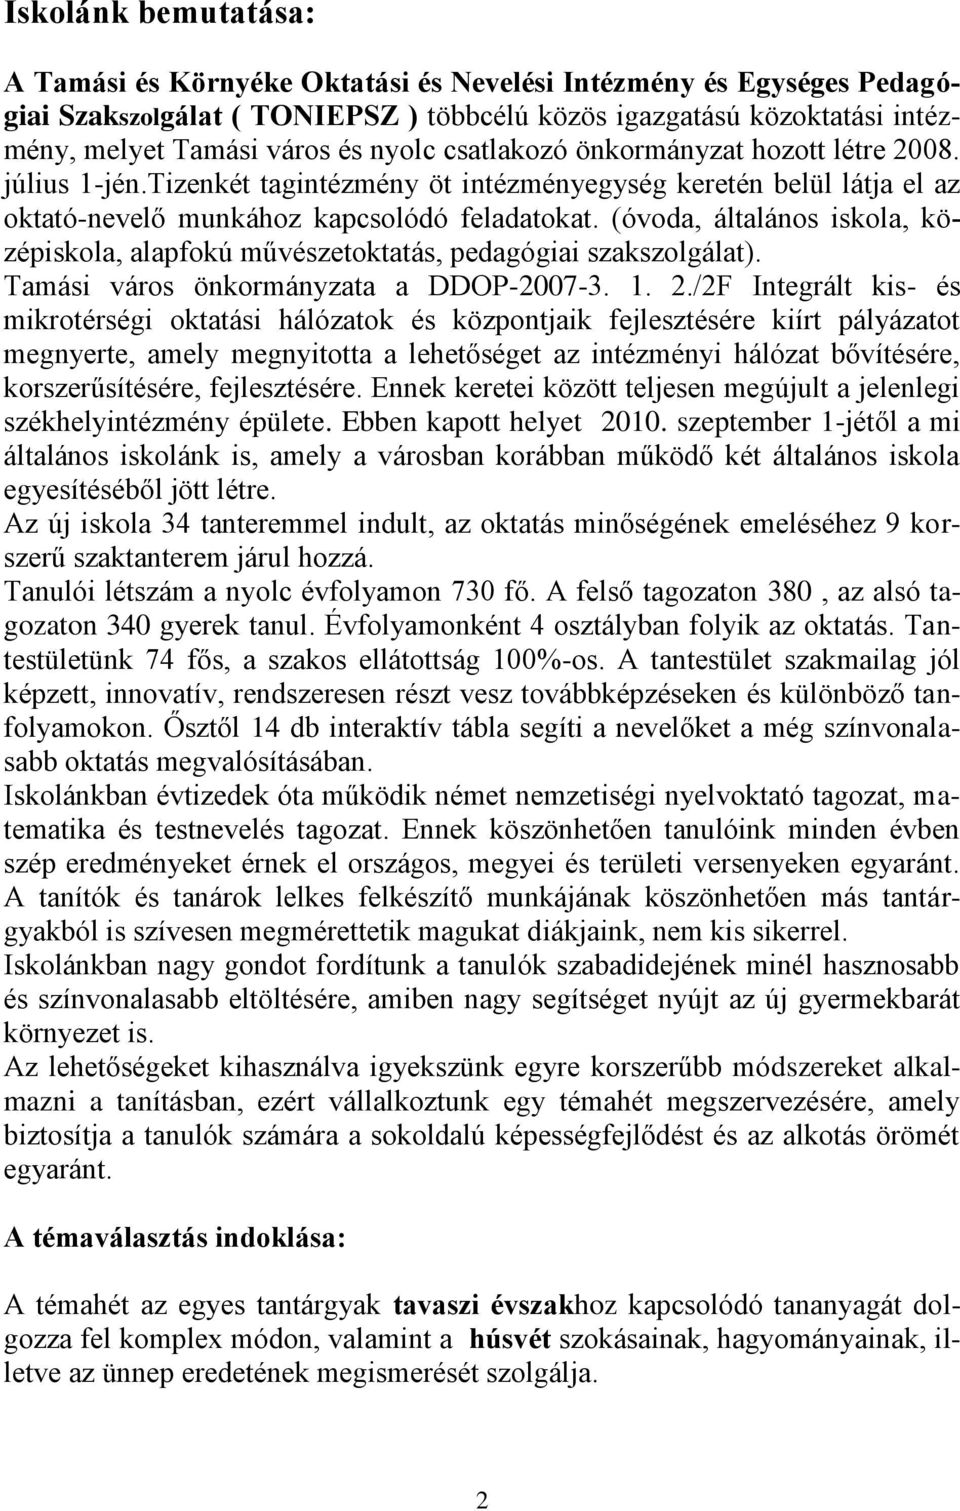 (óvoda, általános iskola, középiskola, alapfokú művészetoktatás, pedagógiai szakszolgálat). Tamási város önkormányzata a DDOP-2007-3. 1. 2.